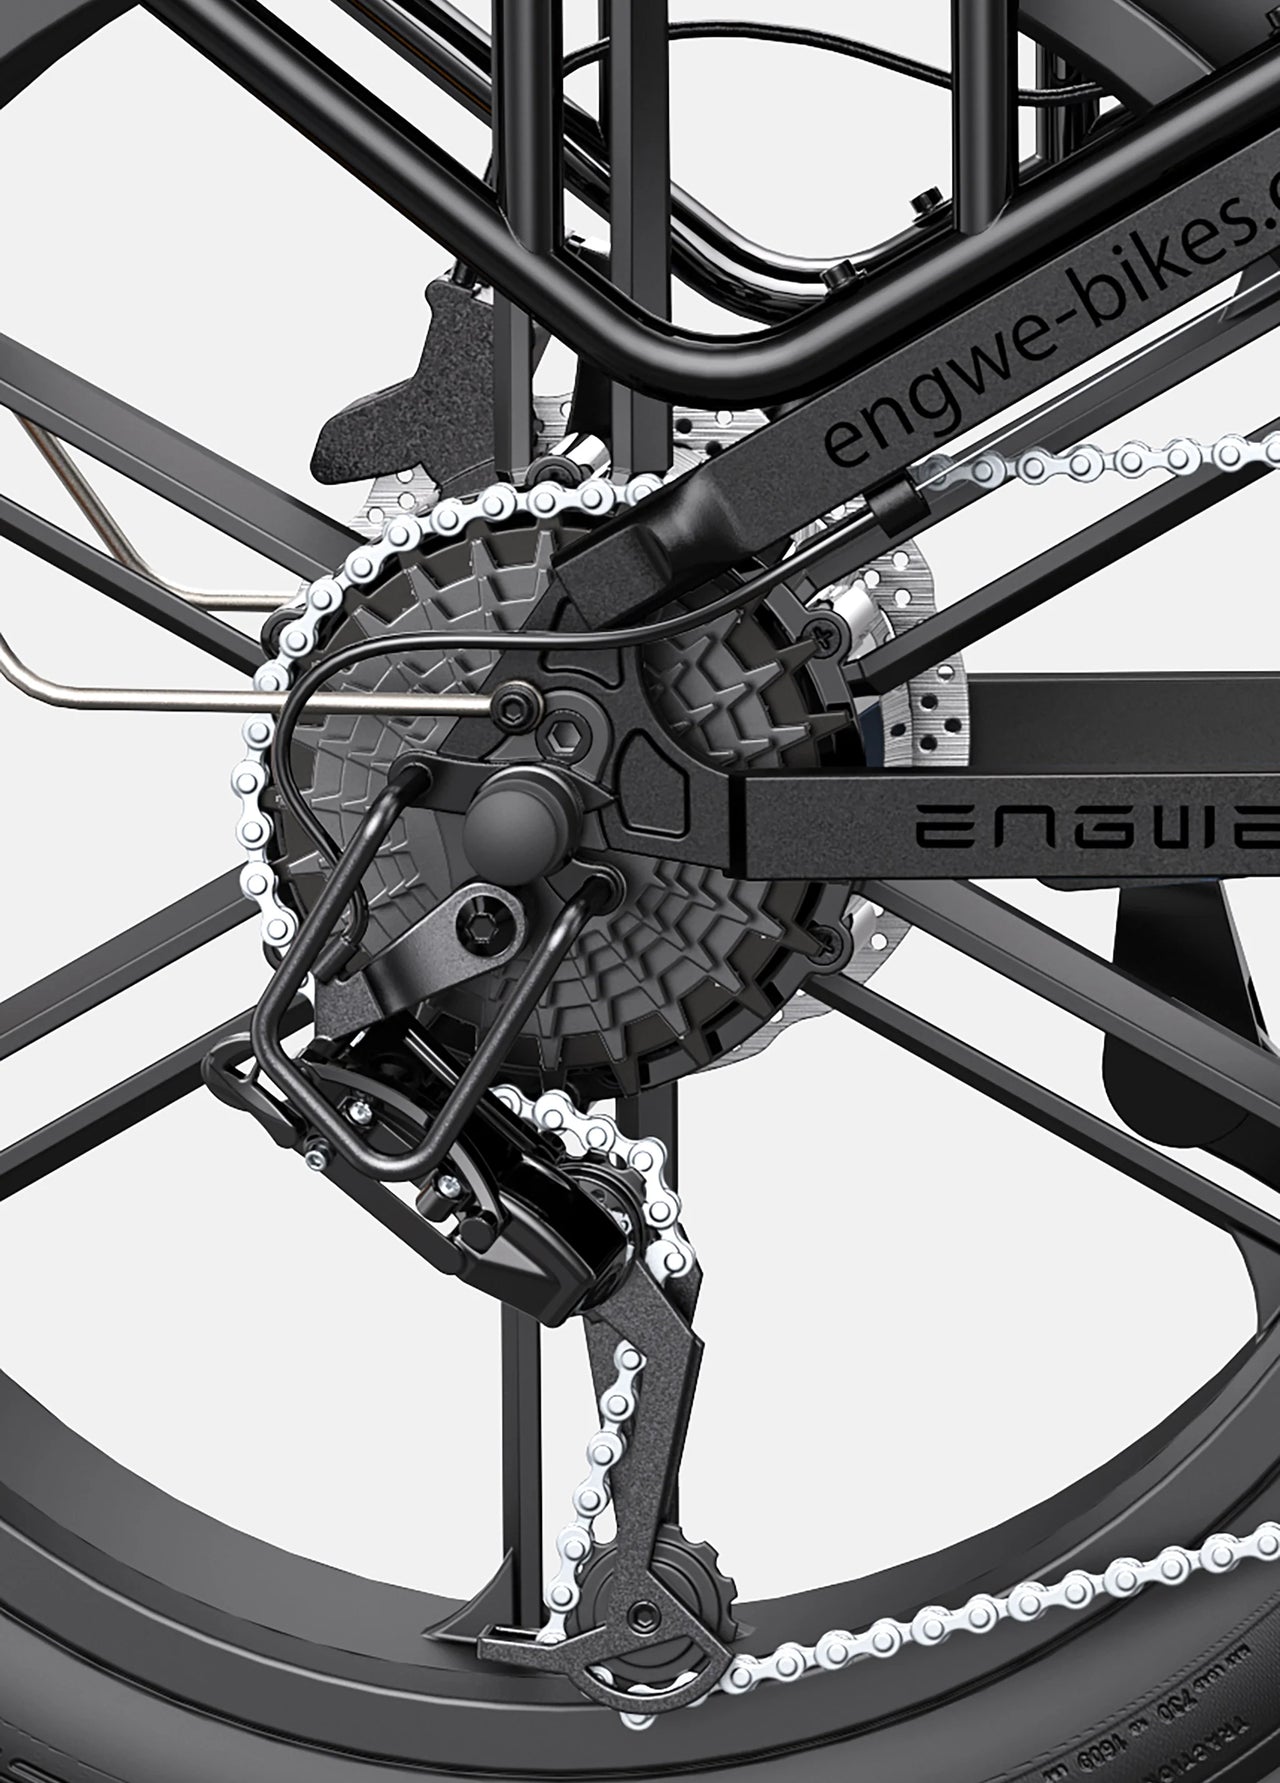 ENGWE Engine Pro Foldable Electric Bike